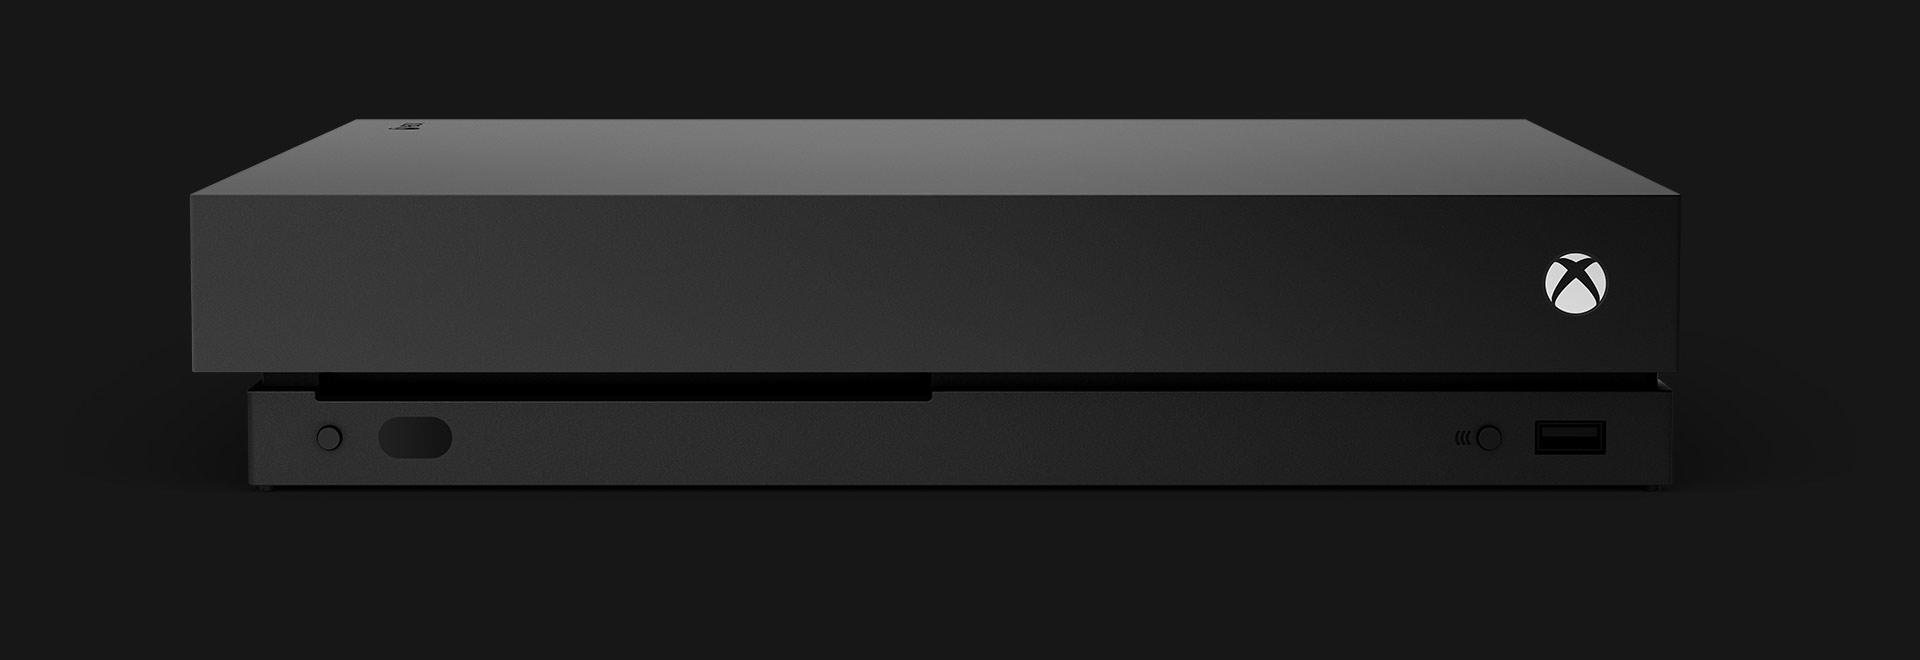 Konsola Xbox One X — widok od przodu.